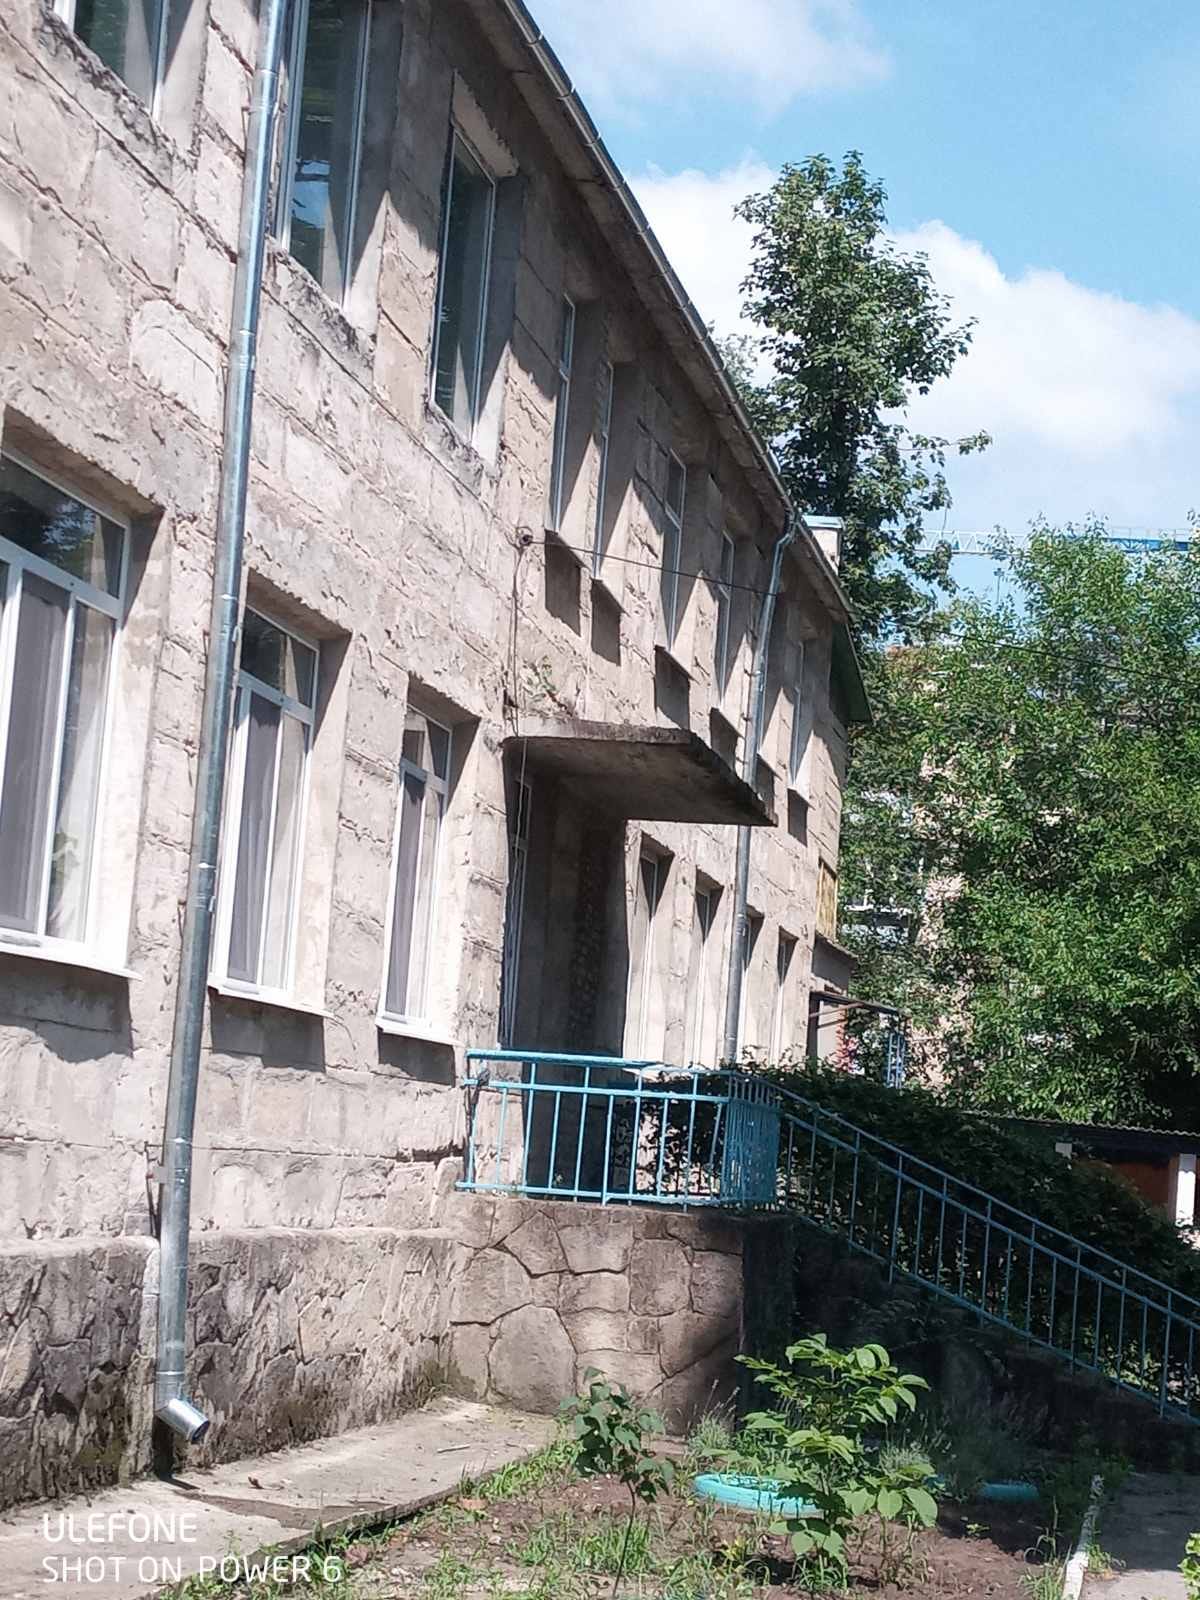 În Instituția de Educație Timpurie nr. 9 s-a efectuat reparația capitală a acoperișului edificiului, (poze cu derularea lucrărilor la etapa inițială până la reparație și etapa finală).